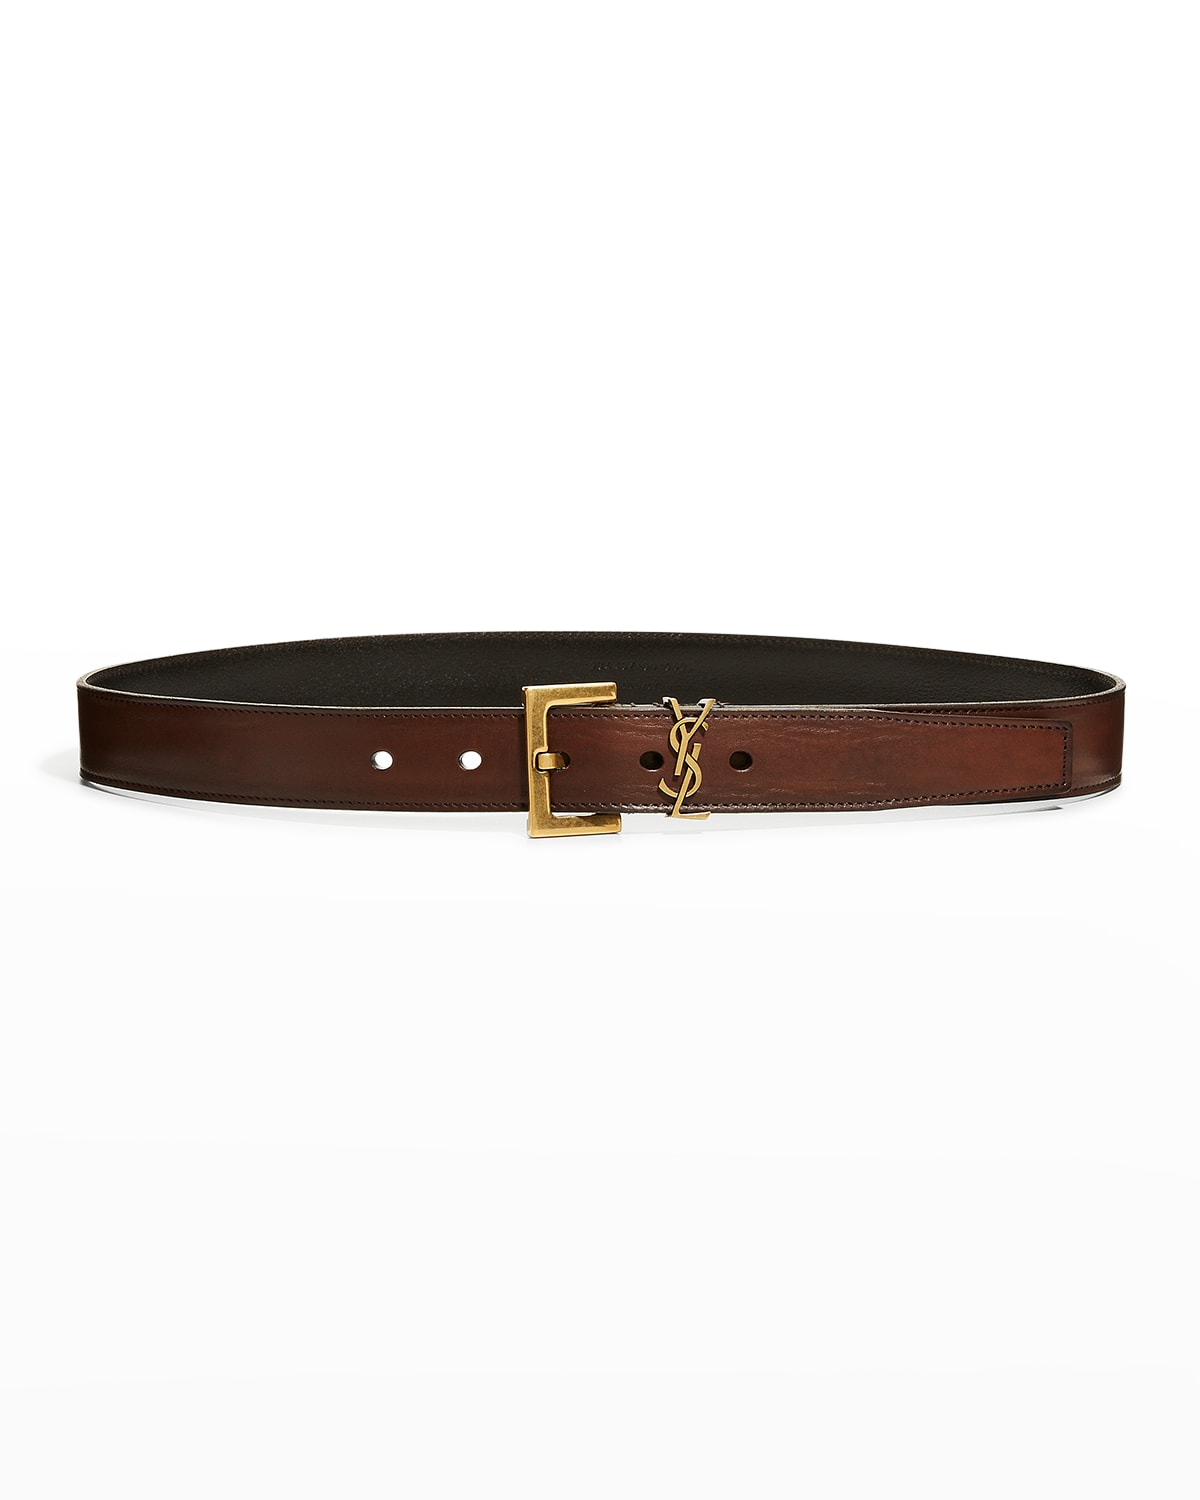 Saint Laurent Ysl Monogram Leather Skinny Belt In Deep Brown